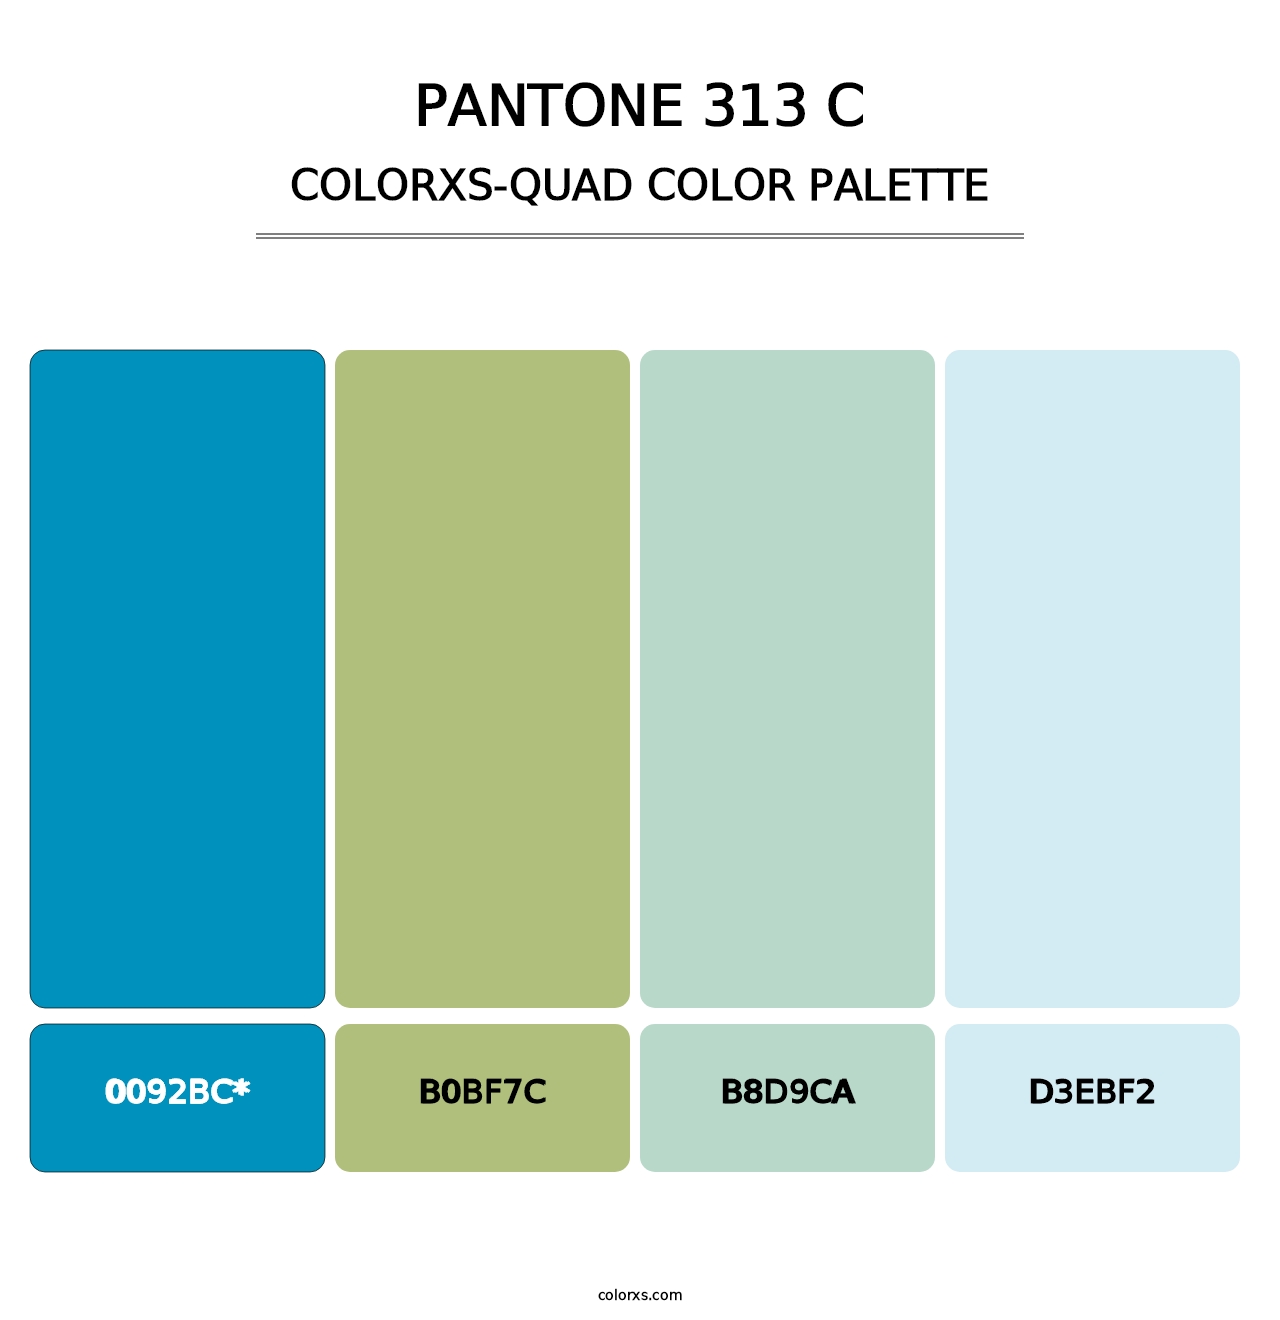 PANTONE 313 C - Colorxs Quad Palette